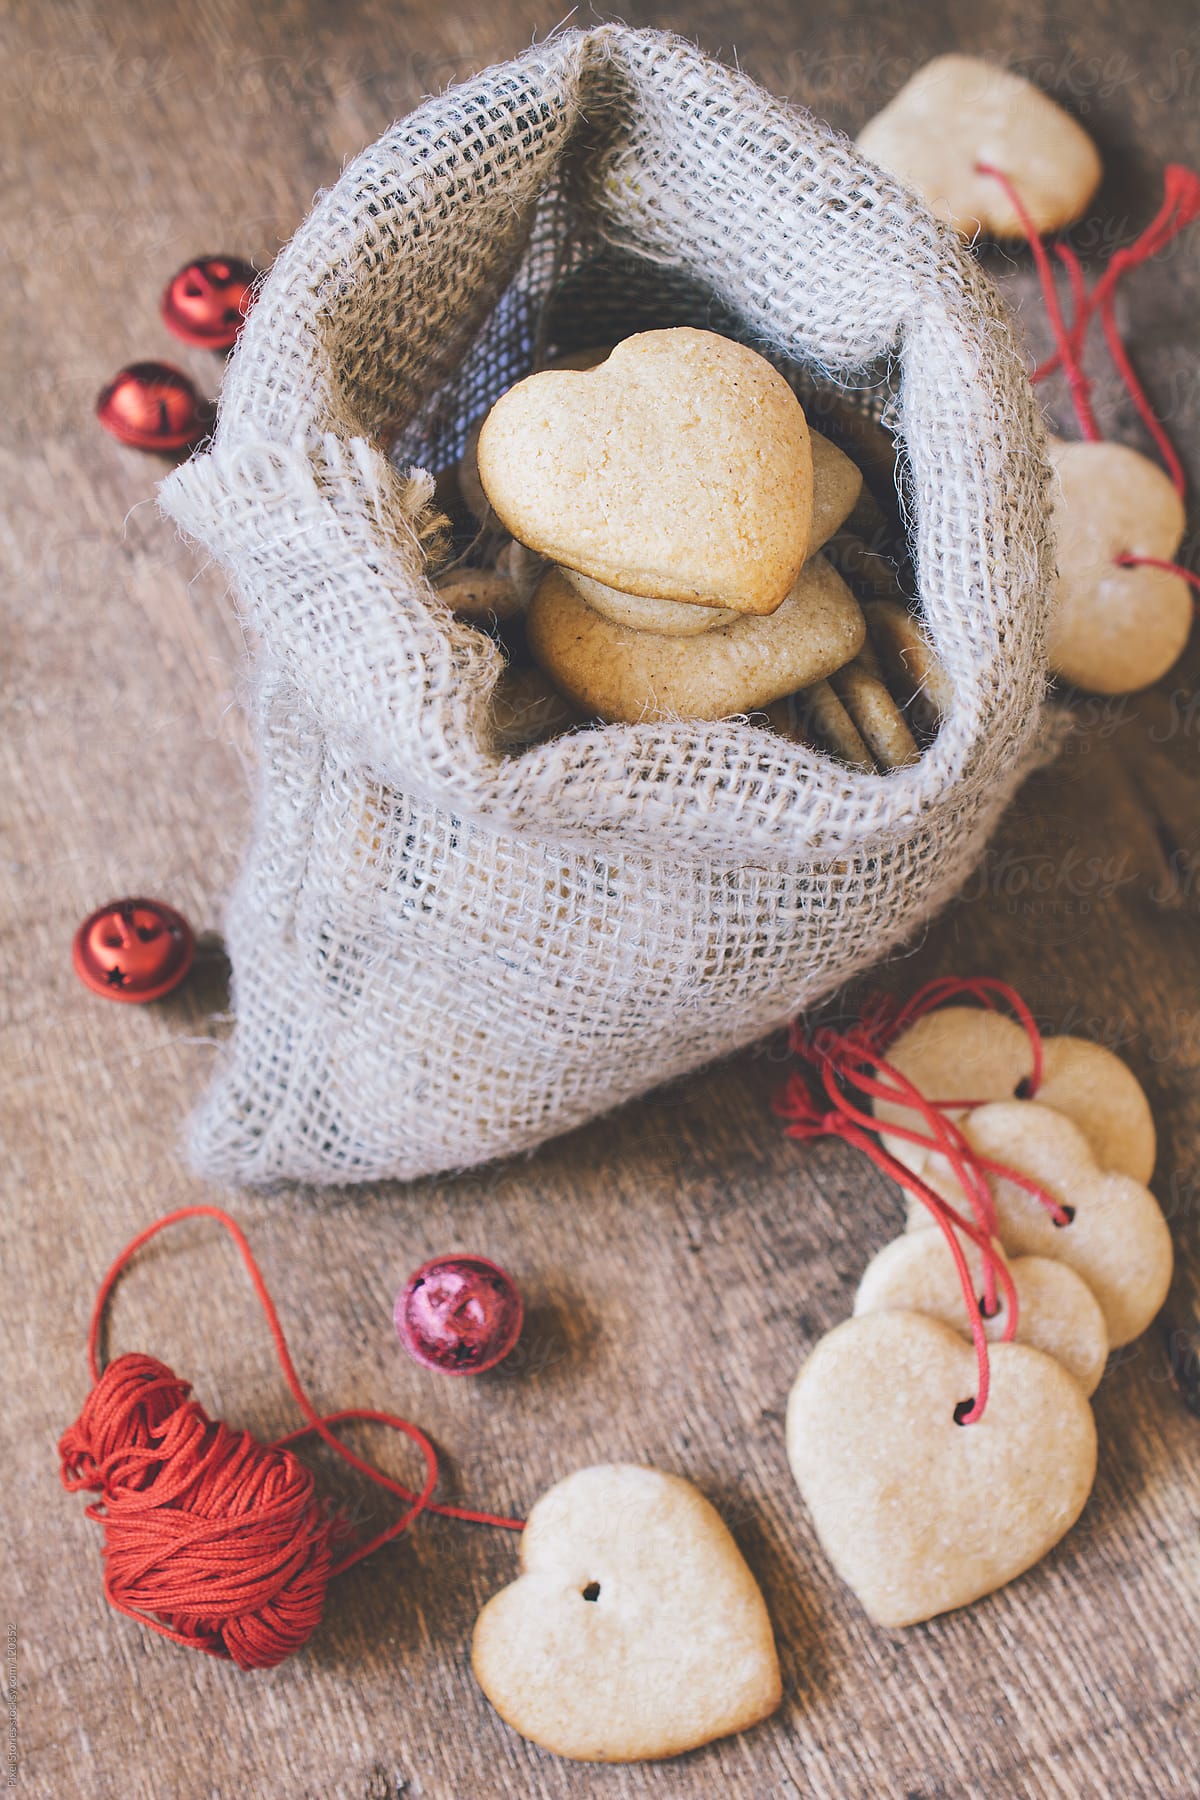 Christmas cookies by Pixel Stories - Stocksy United